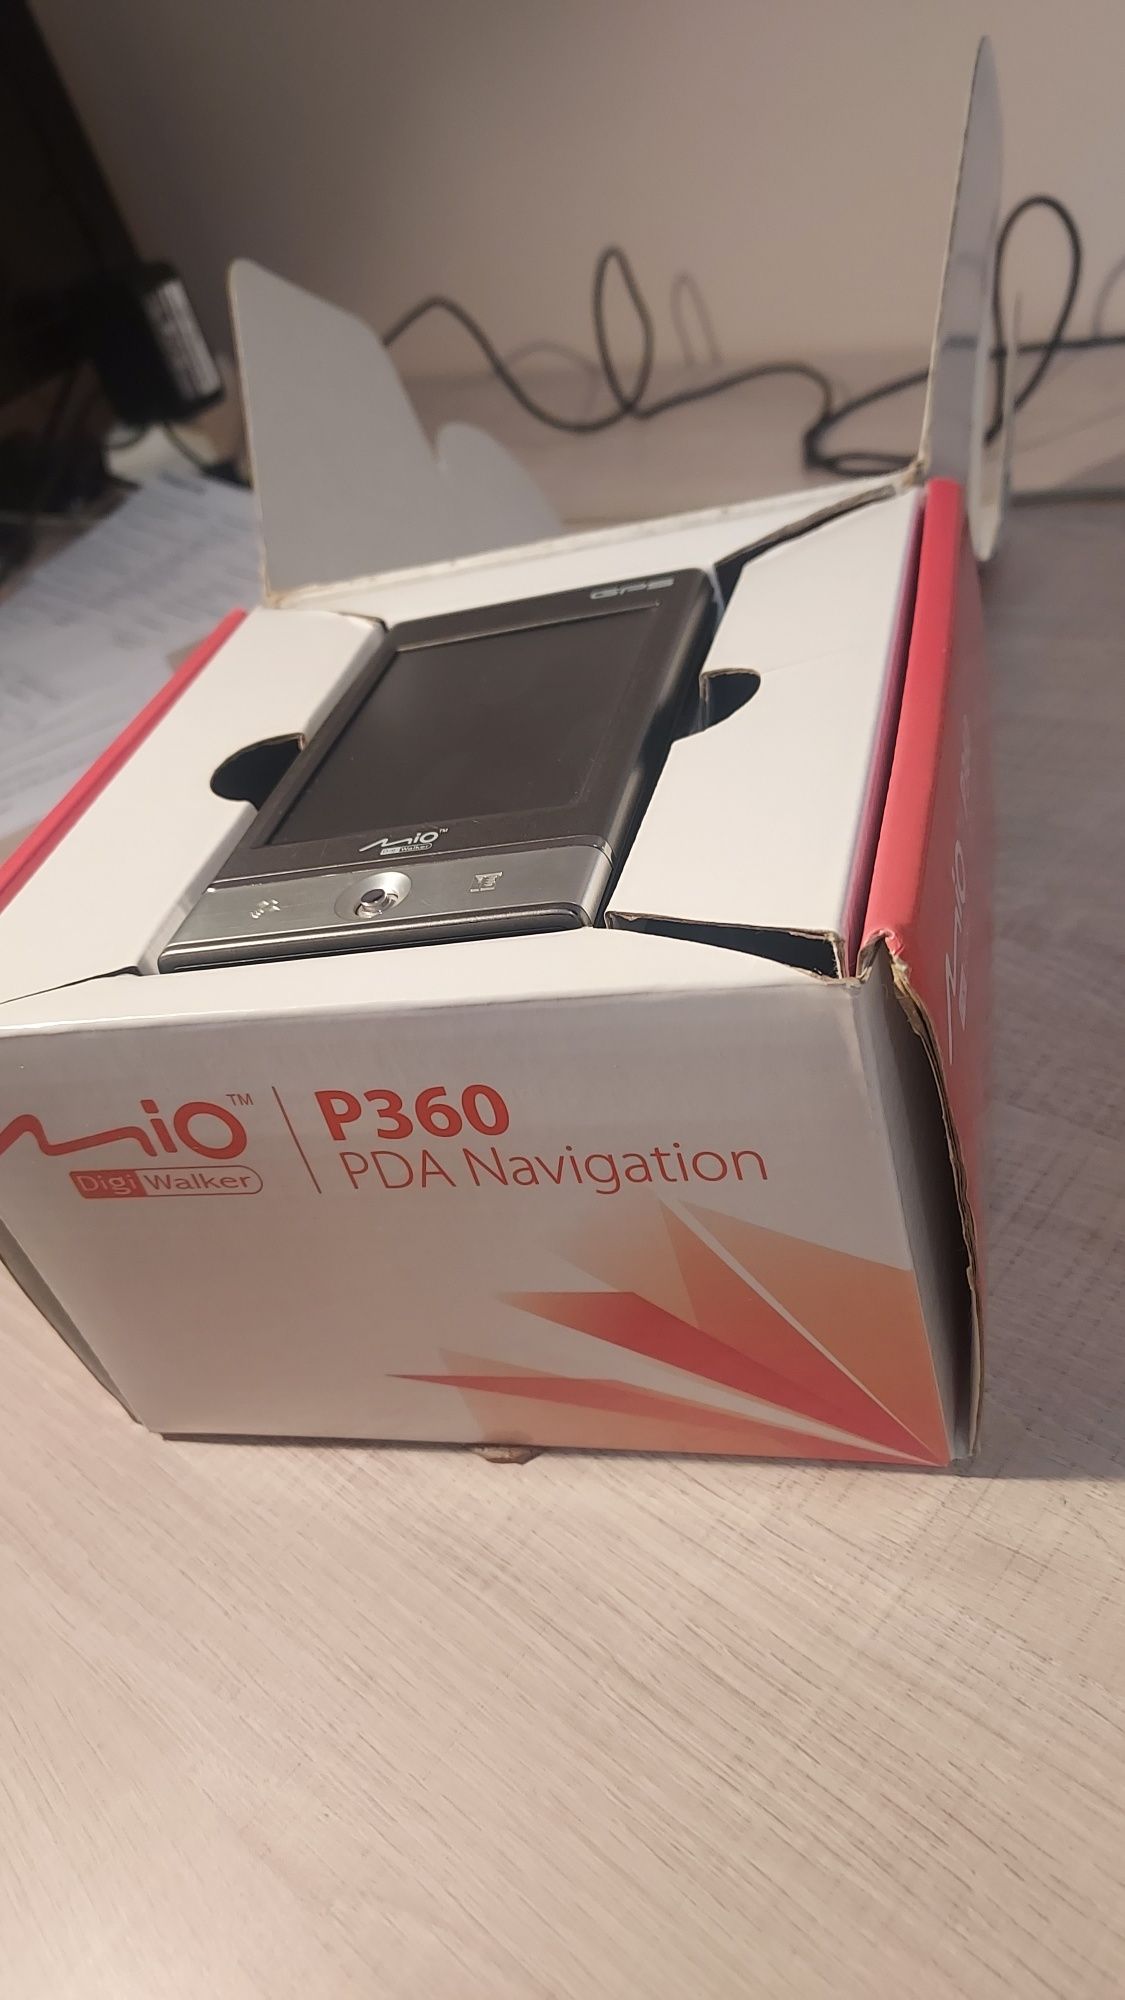 Navigație Mio P360 PDA Navigation